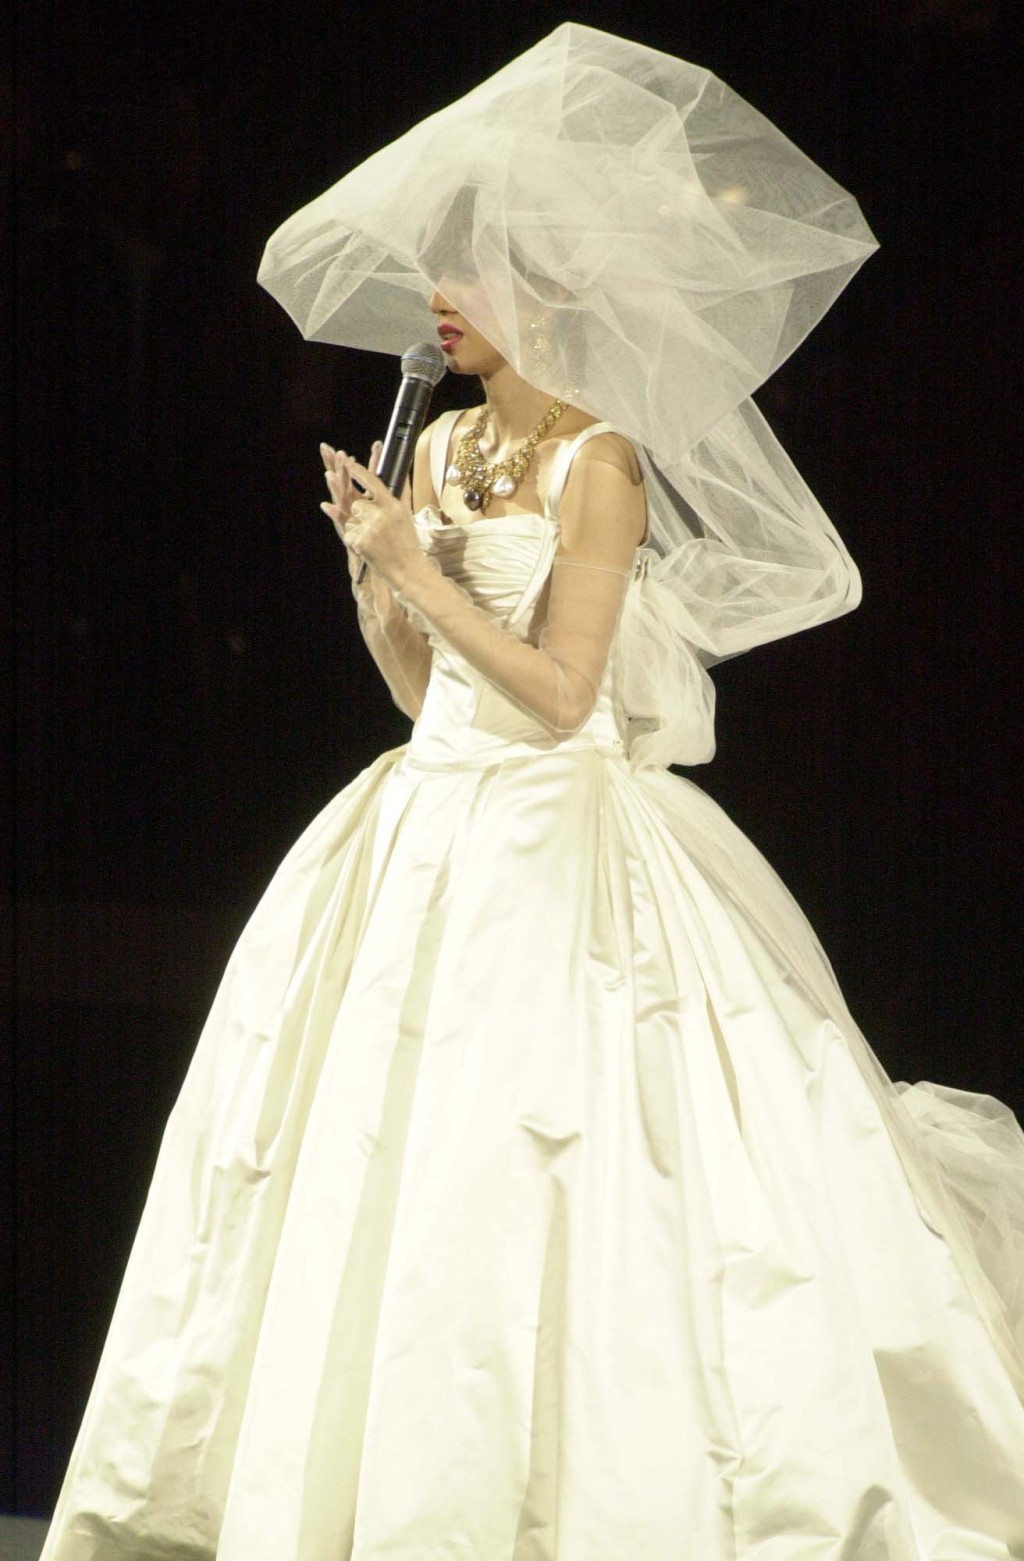 梅艳芳在告别演唱会穿上婚纱，宣布嫁给歌迷及舞台。